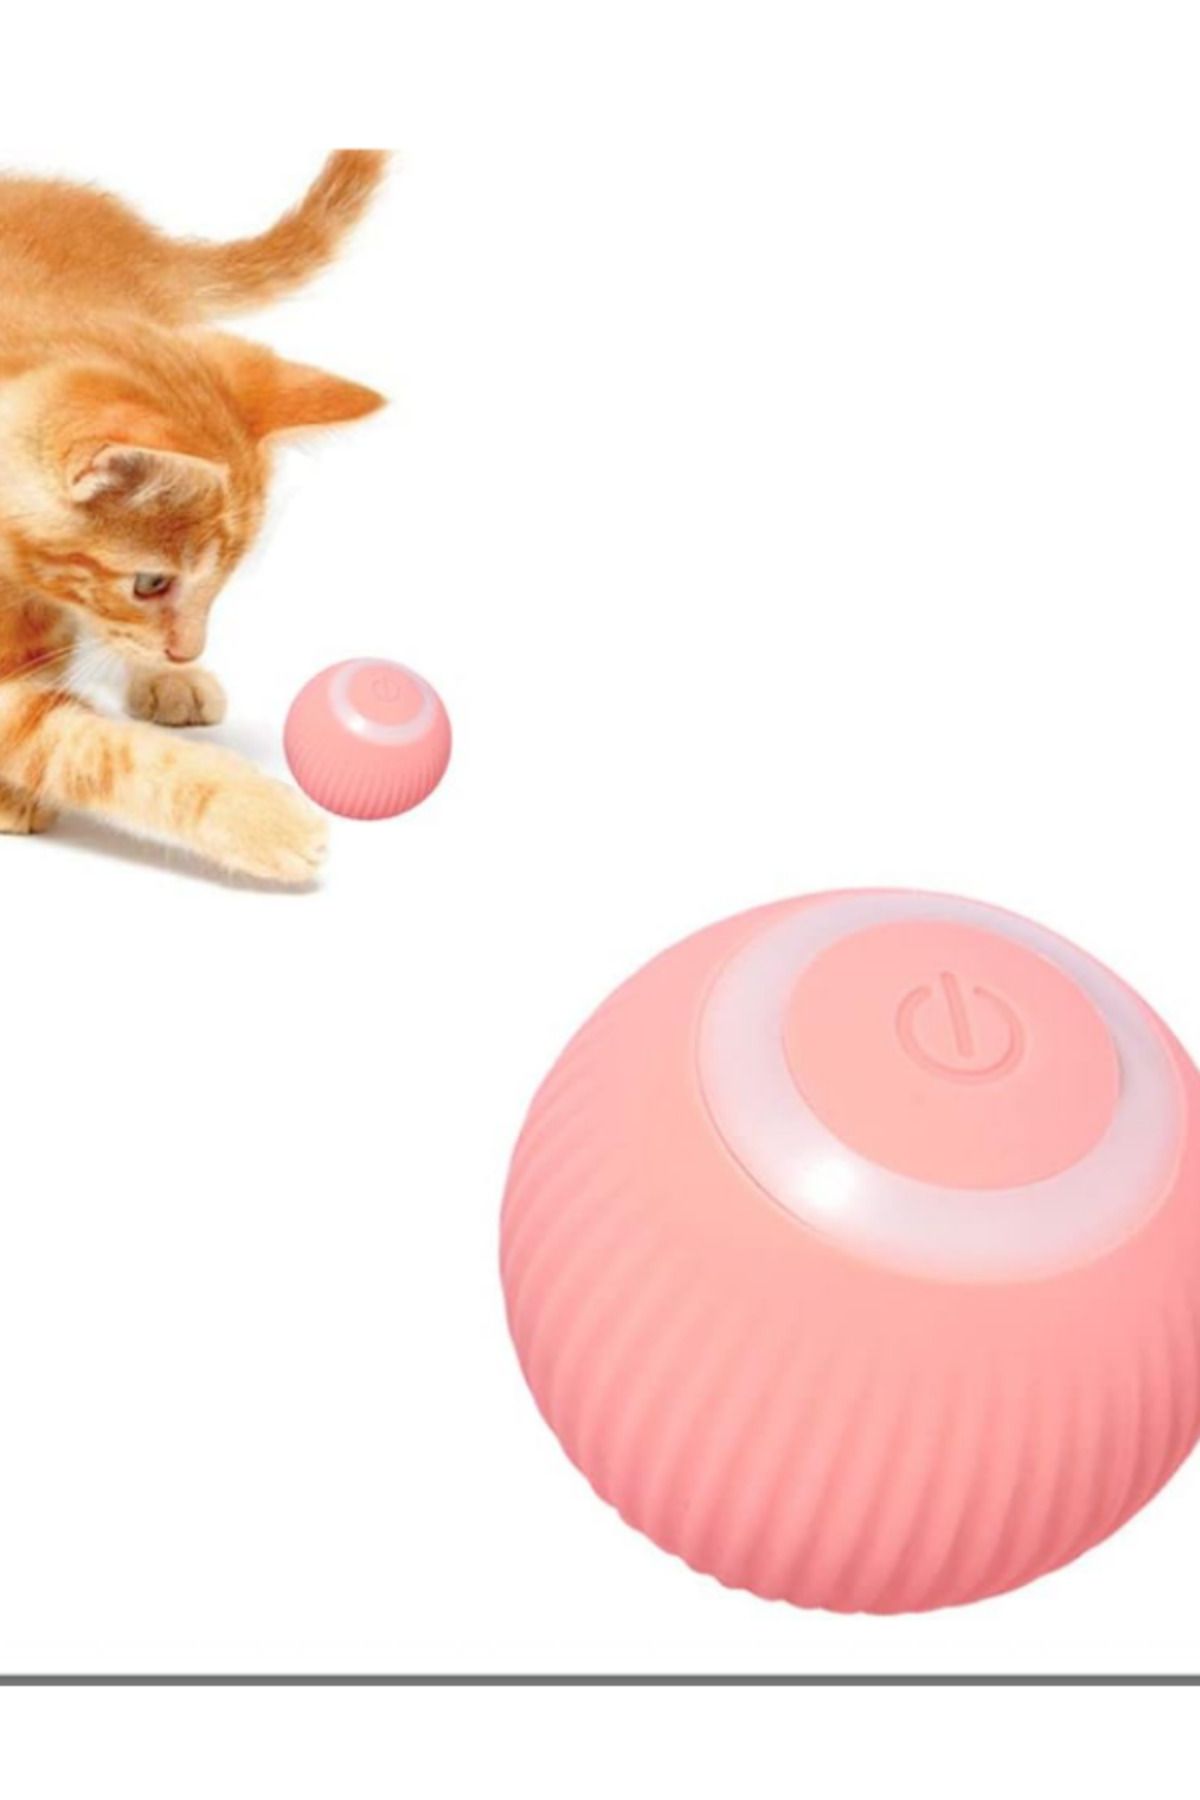 Glipet Şarjlı Otomatik Hareketlenen Kedi Oyun Topu Interaktif 360 Derece Dönen Kedi Oyuncağı